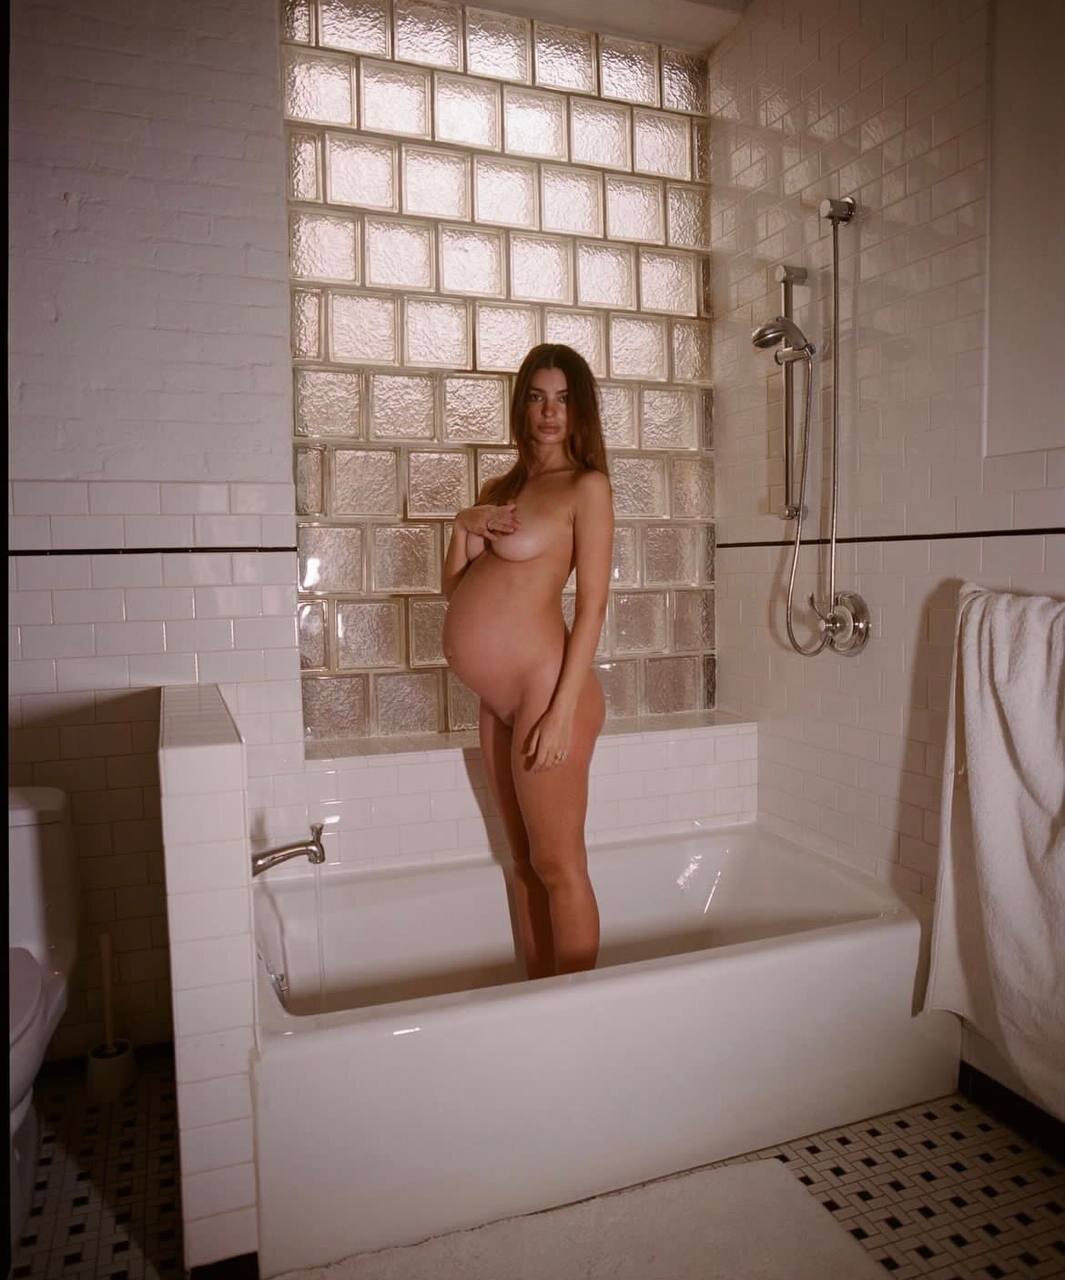 Эмили Ратаковски поделилась своим абсолютно голым фото из ванной